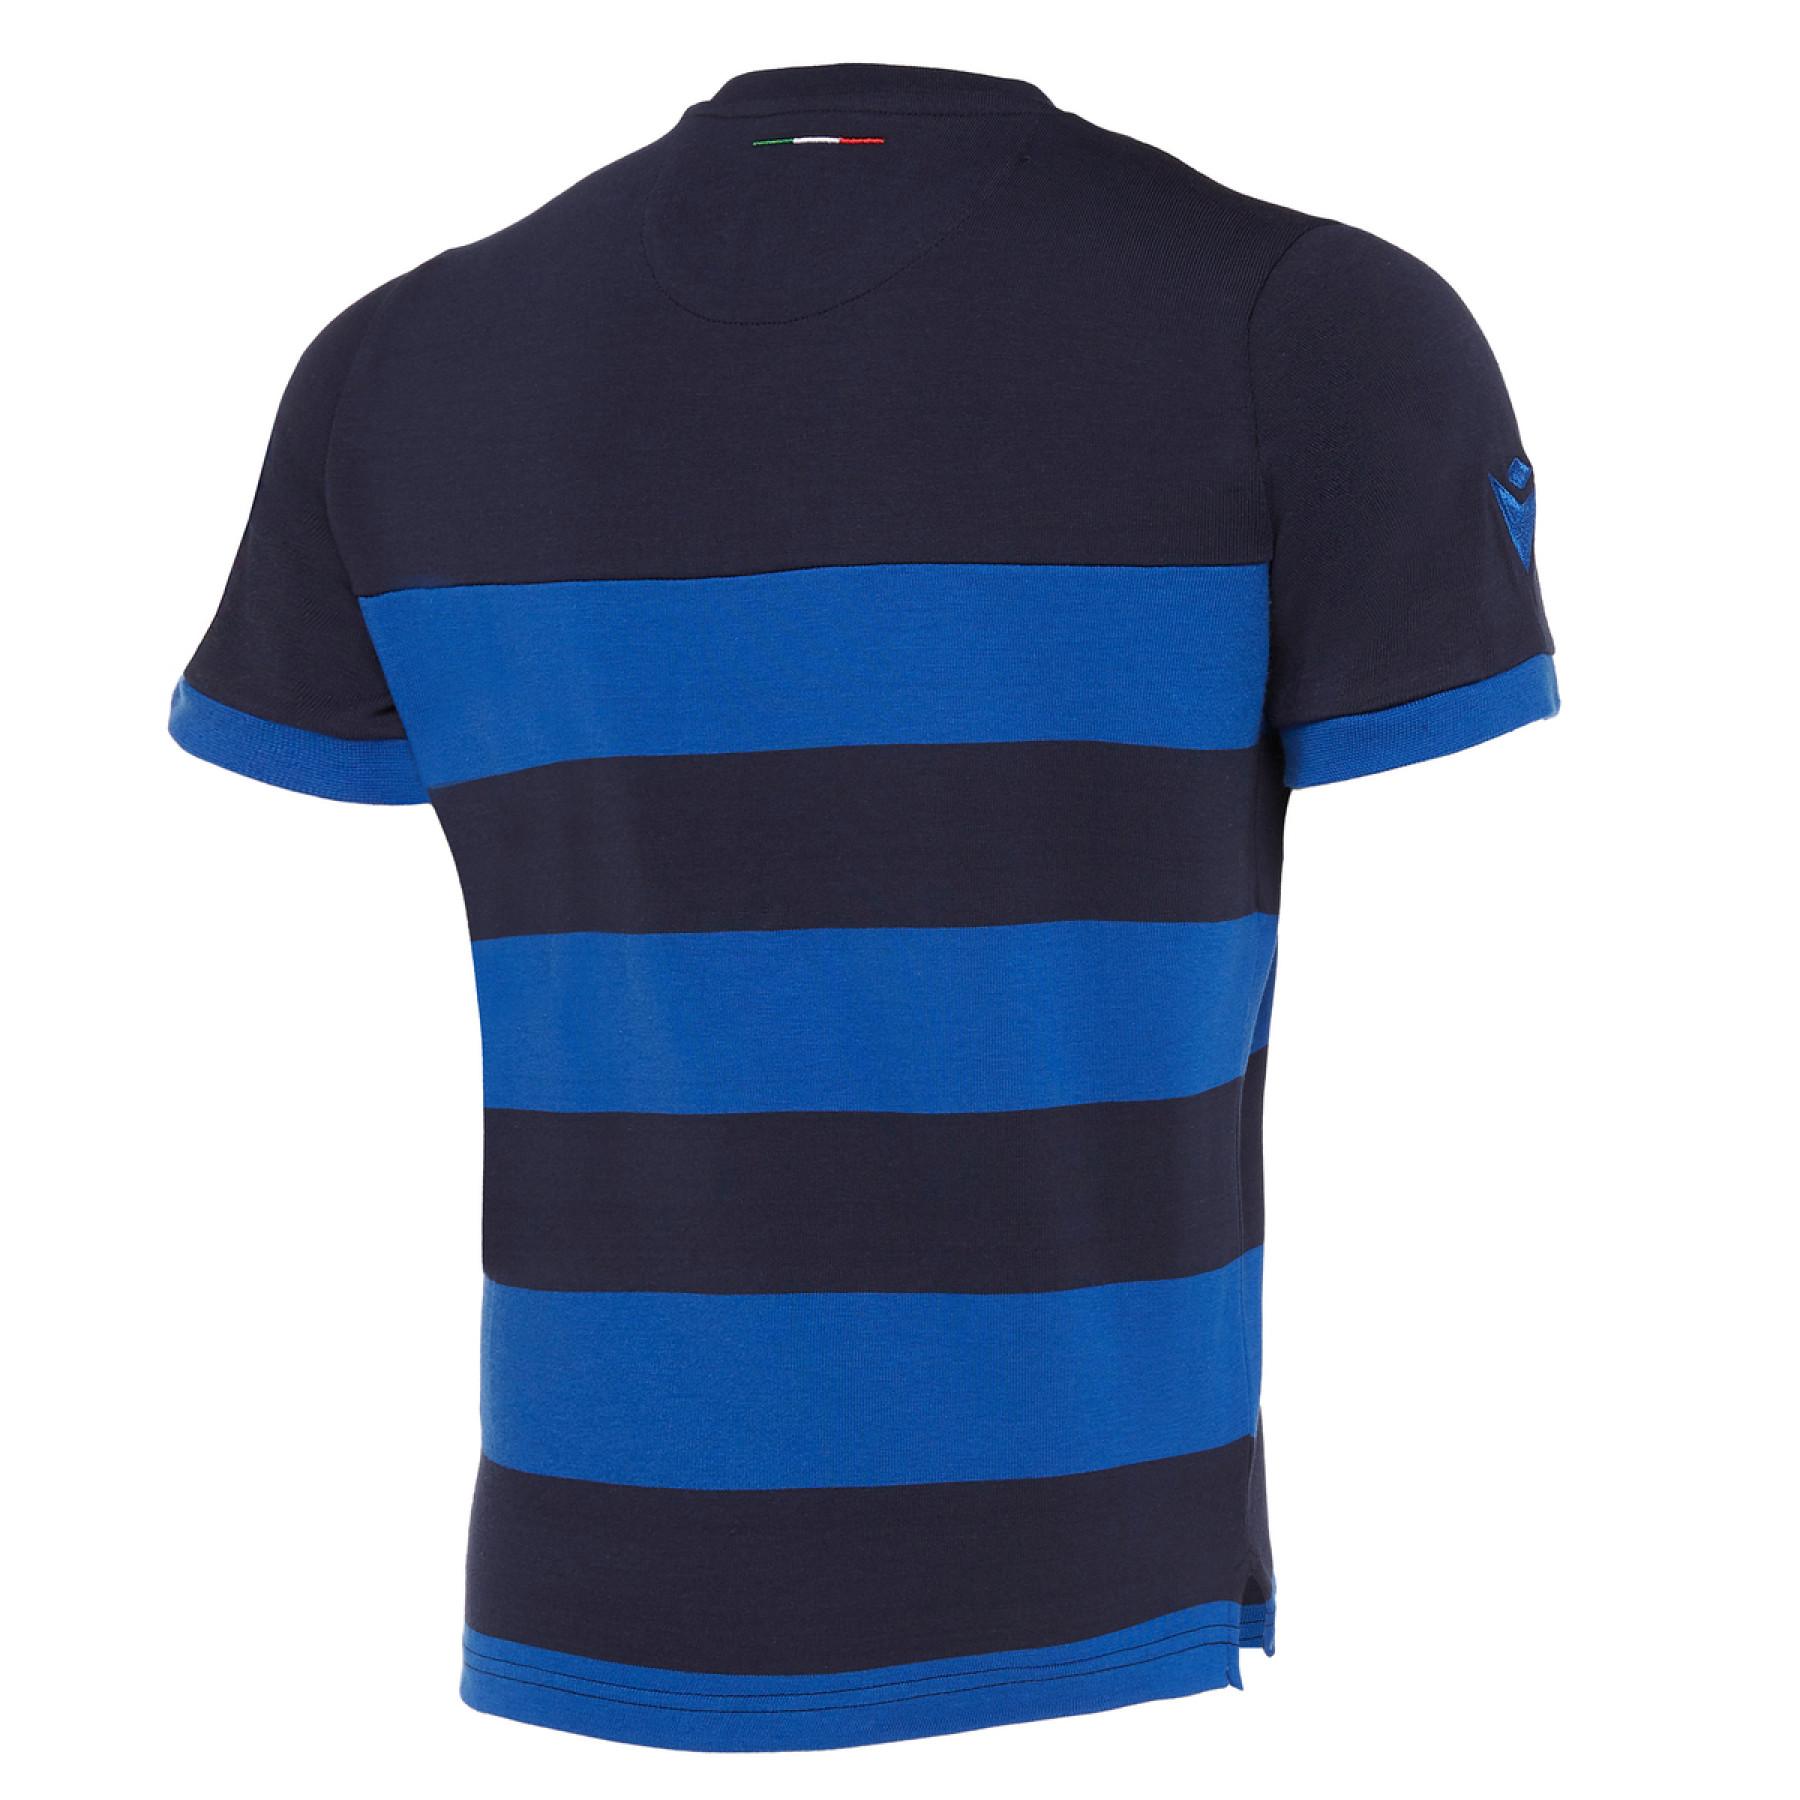 T-shirt criança en algodão Italie rugby 2019